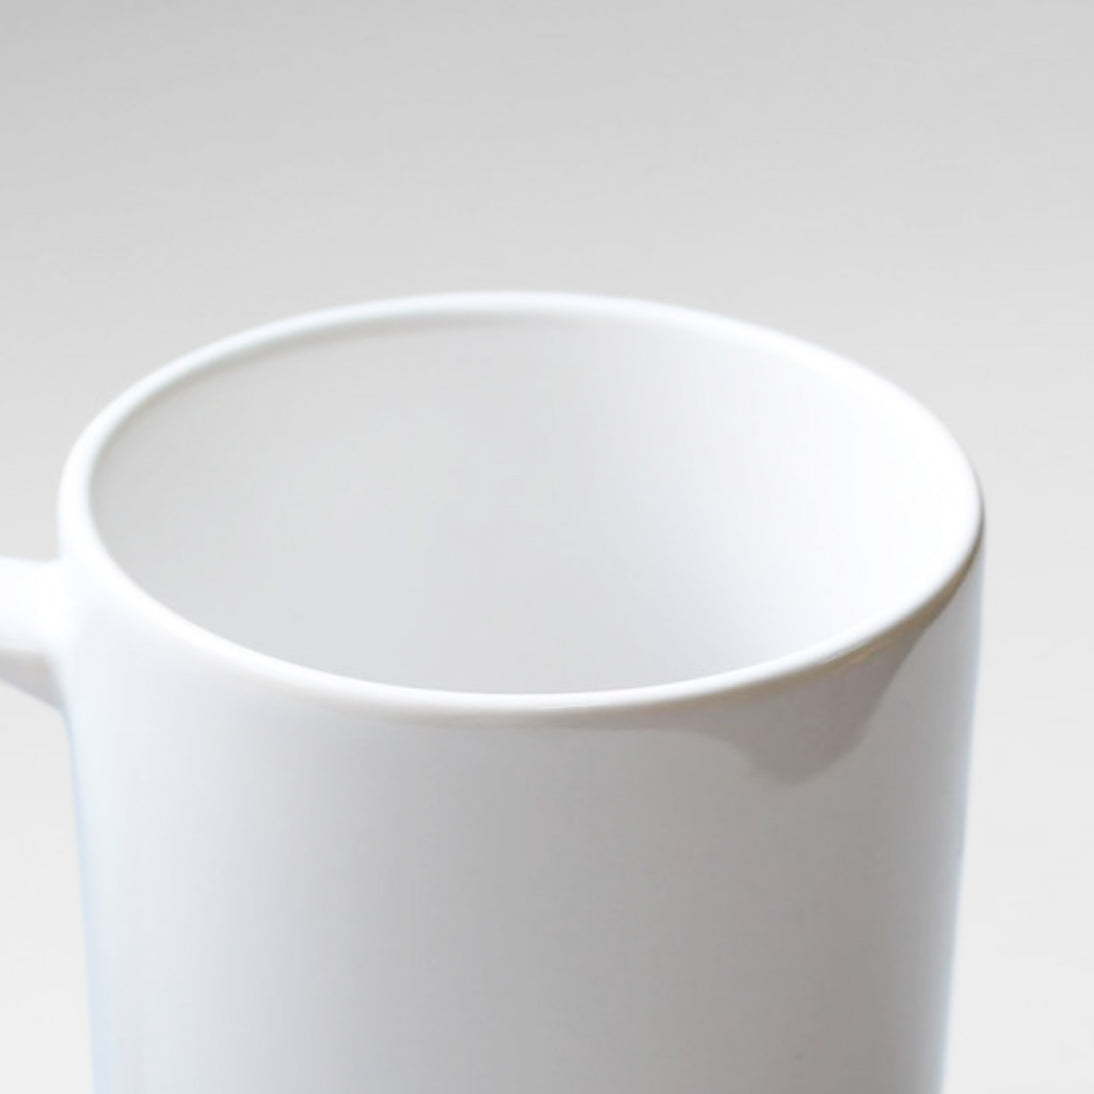 Custom Dog Mug - Personalized World's Best Dachshund Dad Gift For Dad - White Mug